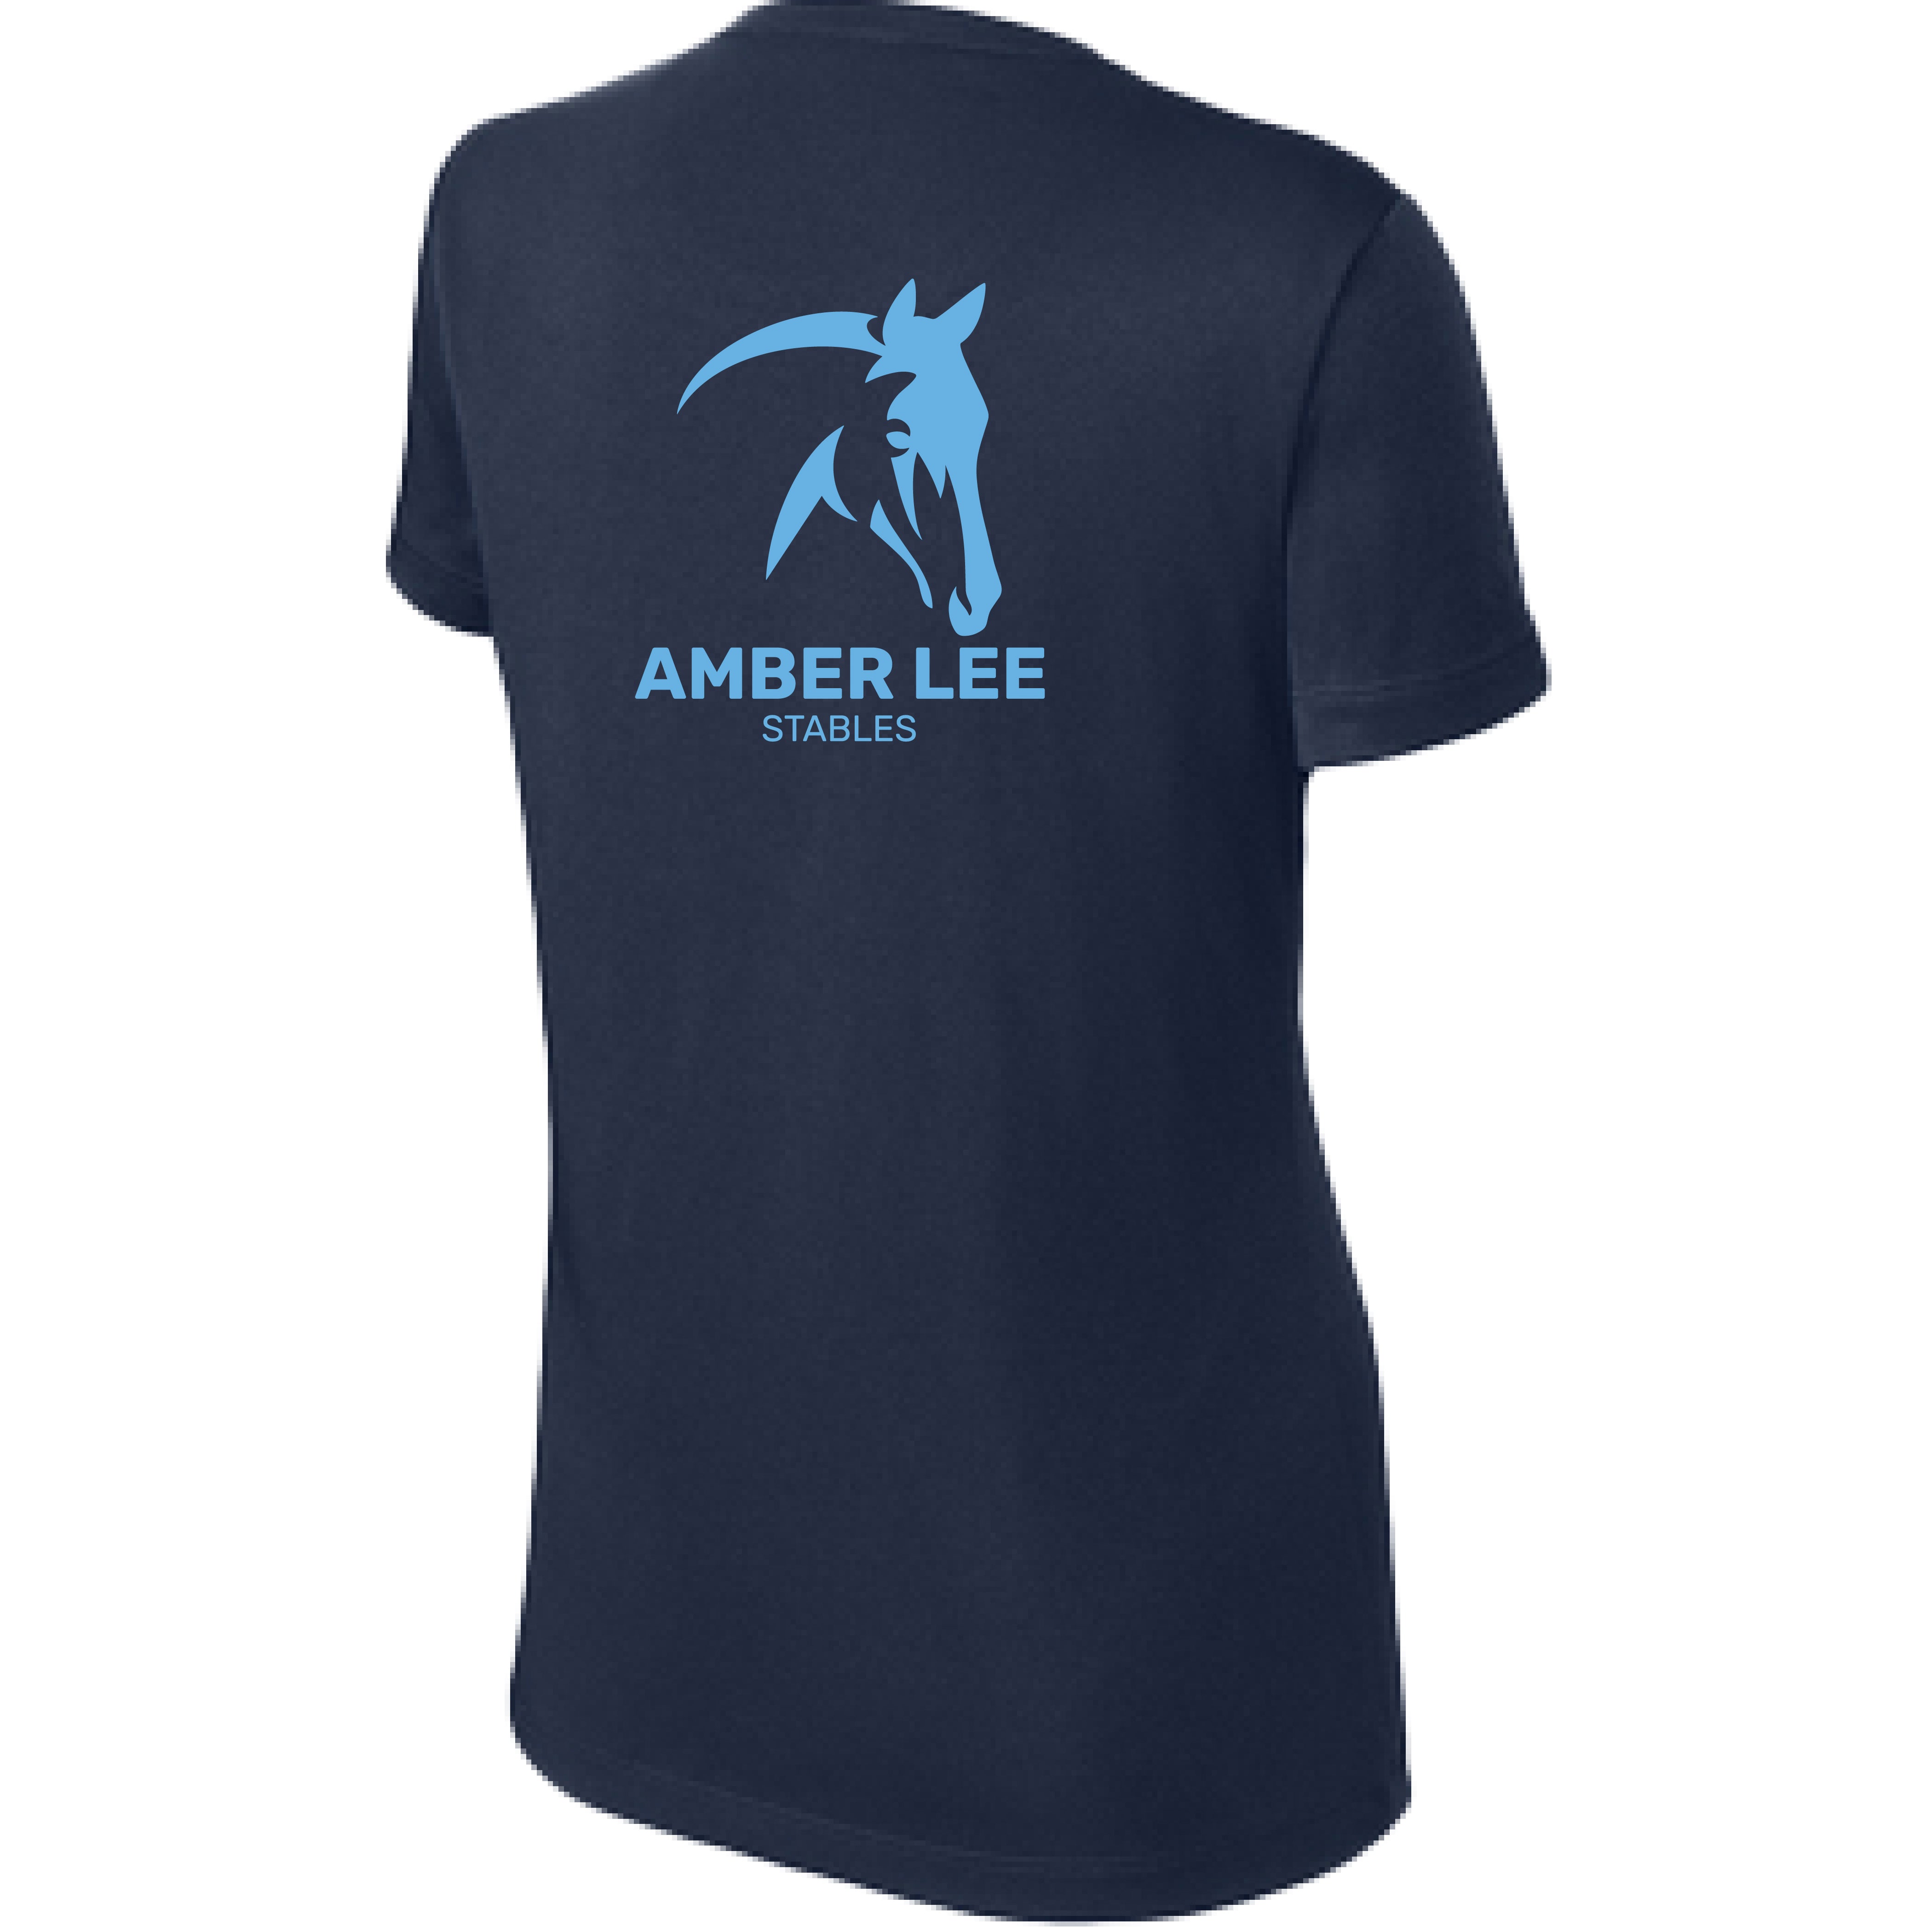 Amber Lee Stables - Ladies Performance Tee